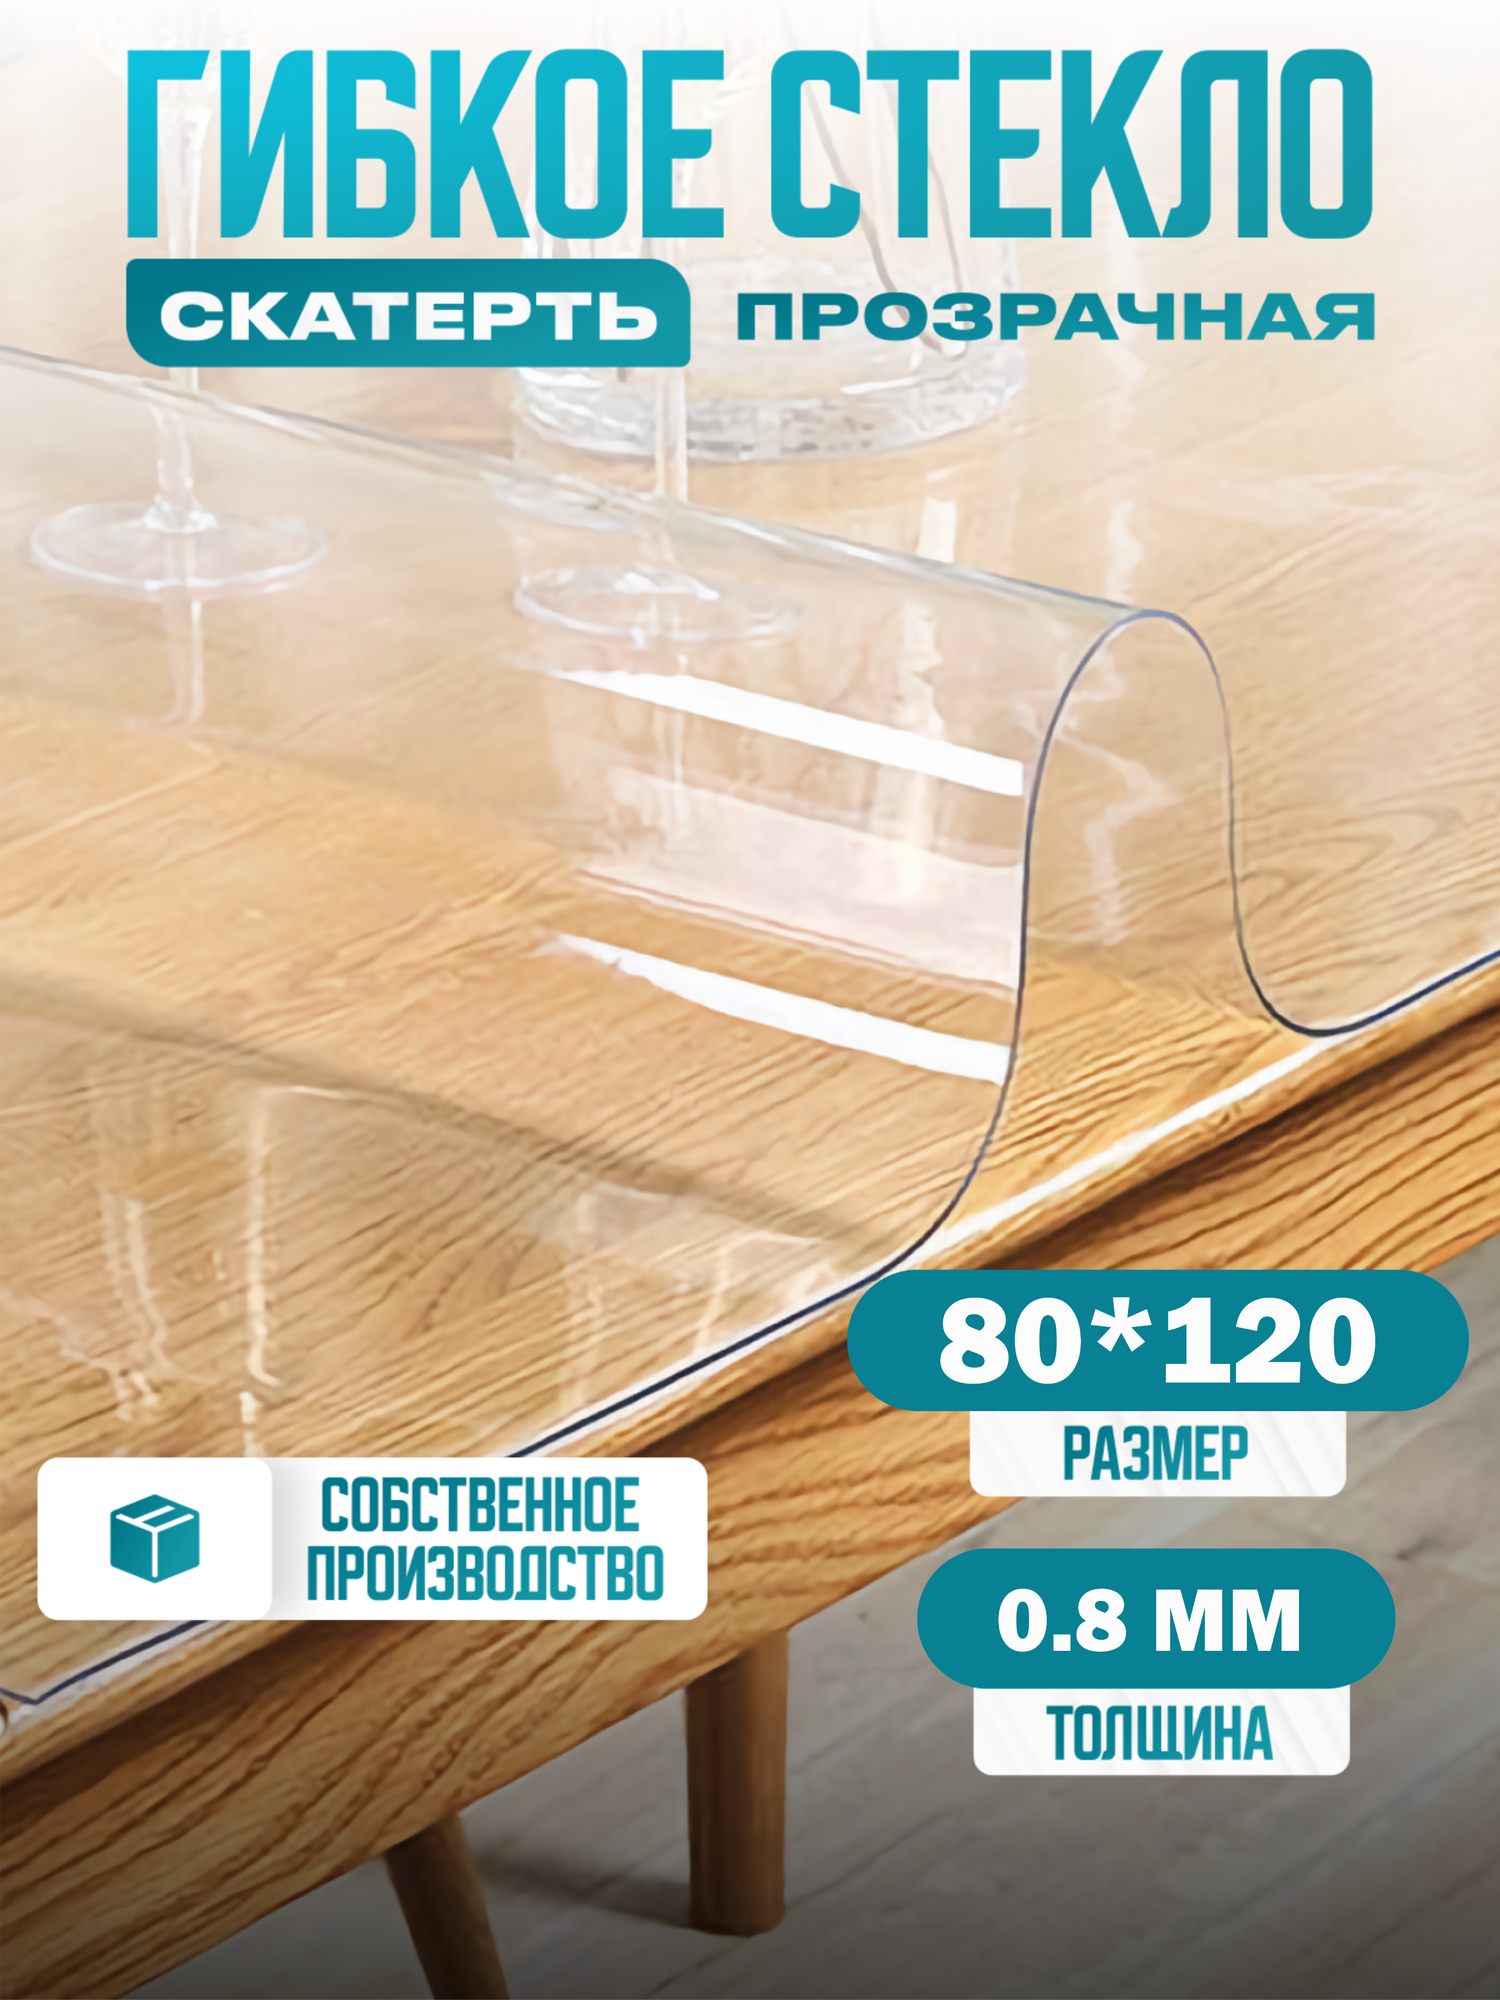 Силиконовая скатерть Decosave мягкое стекло 80*120 см, толщина 0,8 мм.